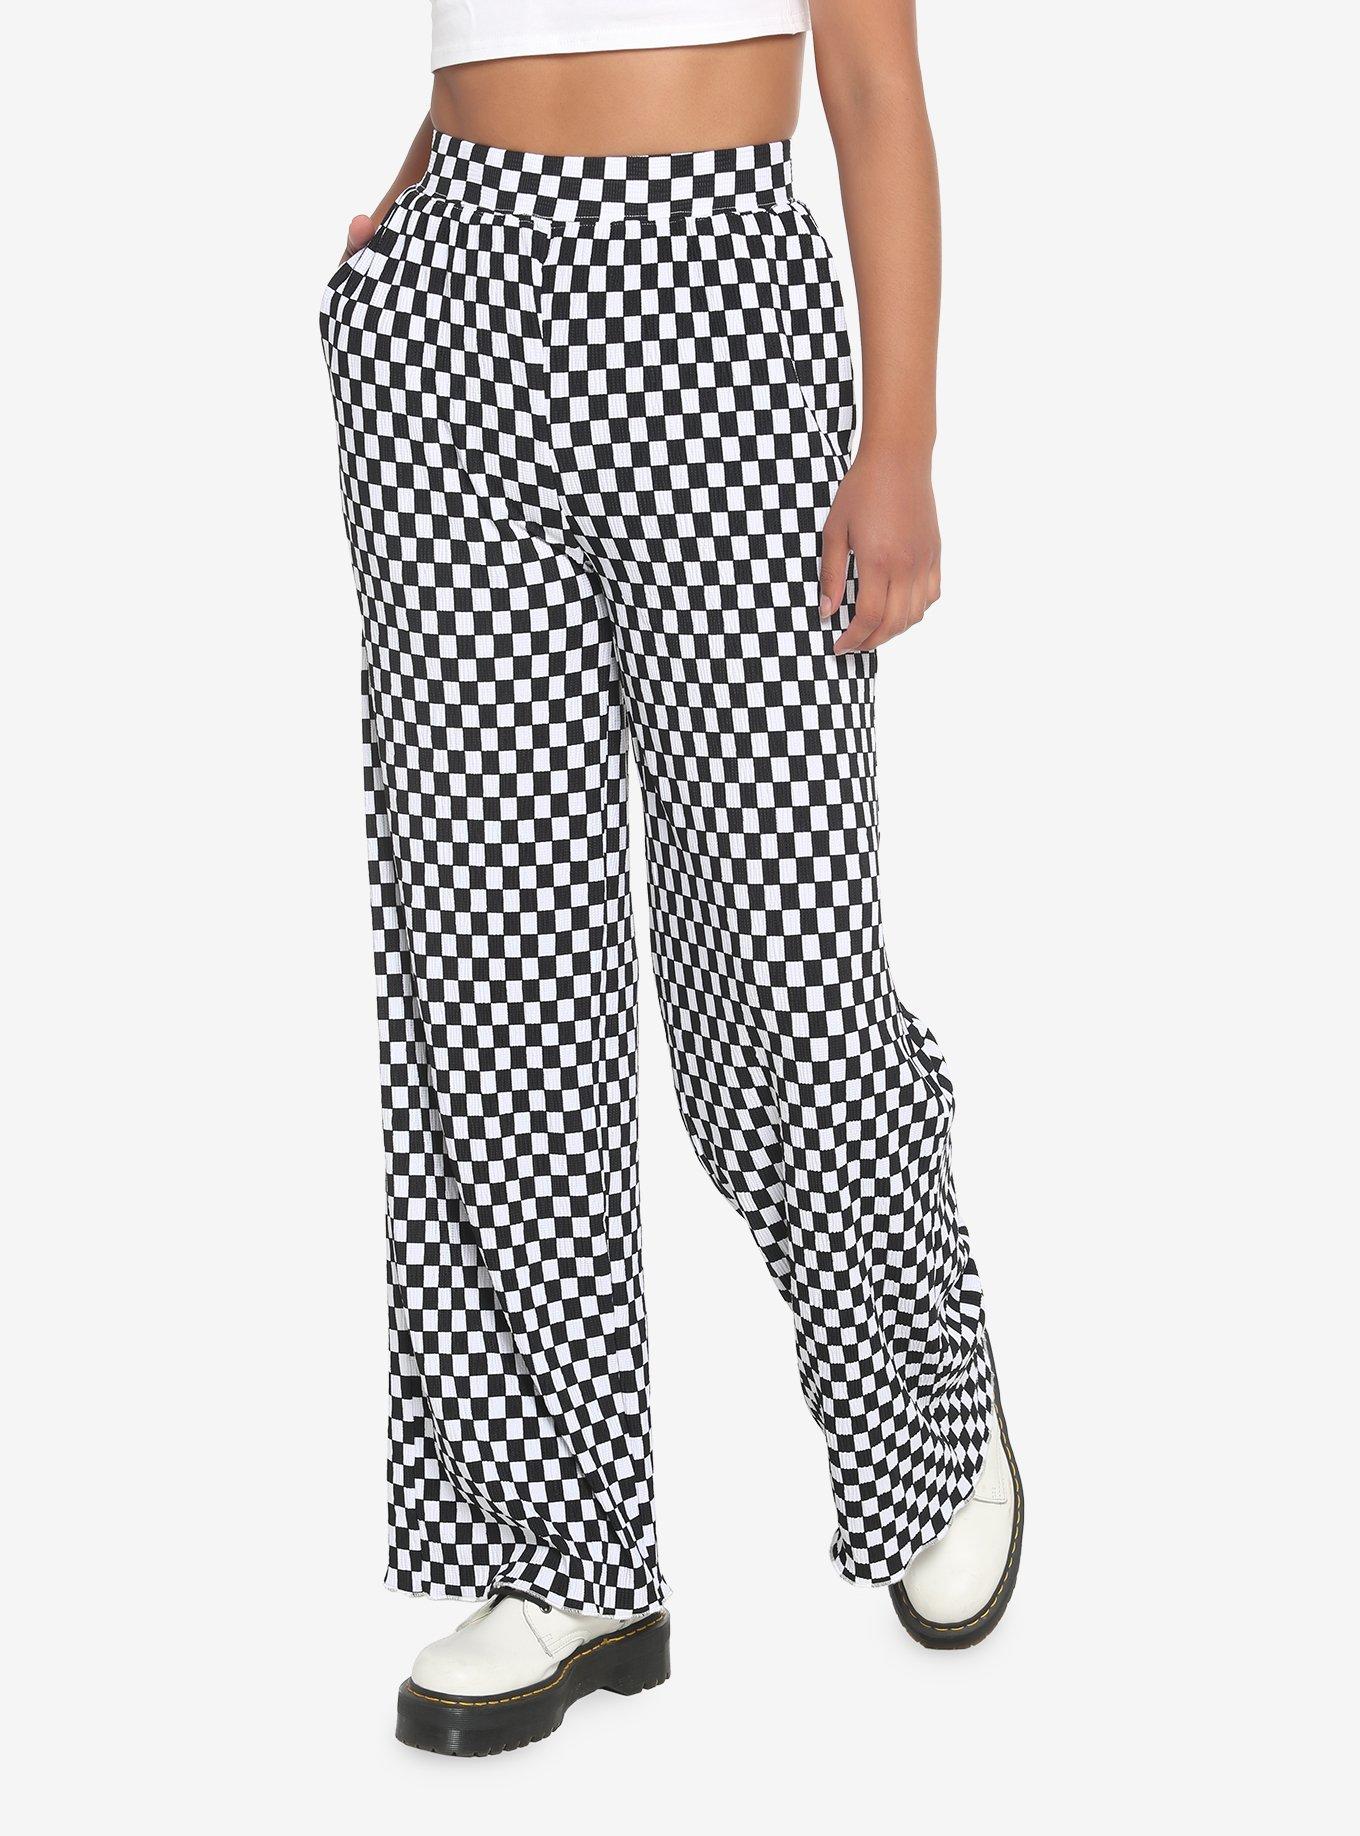 Black & White Checkered Straight Leg Pants | Hot Topic